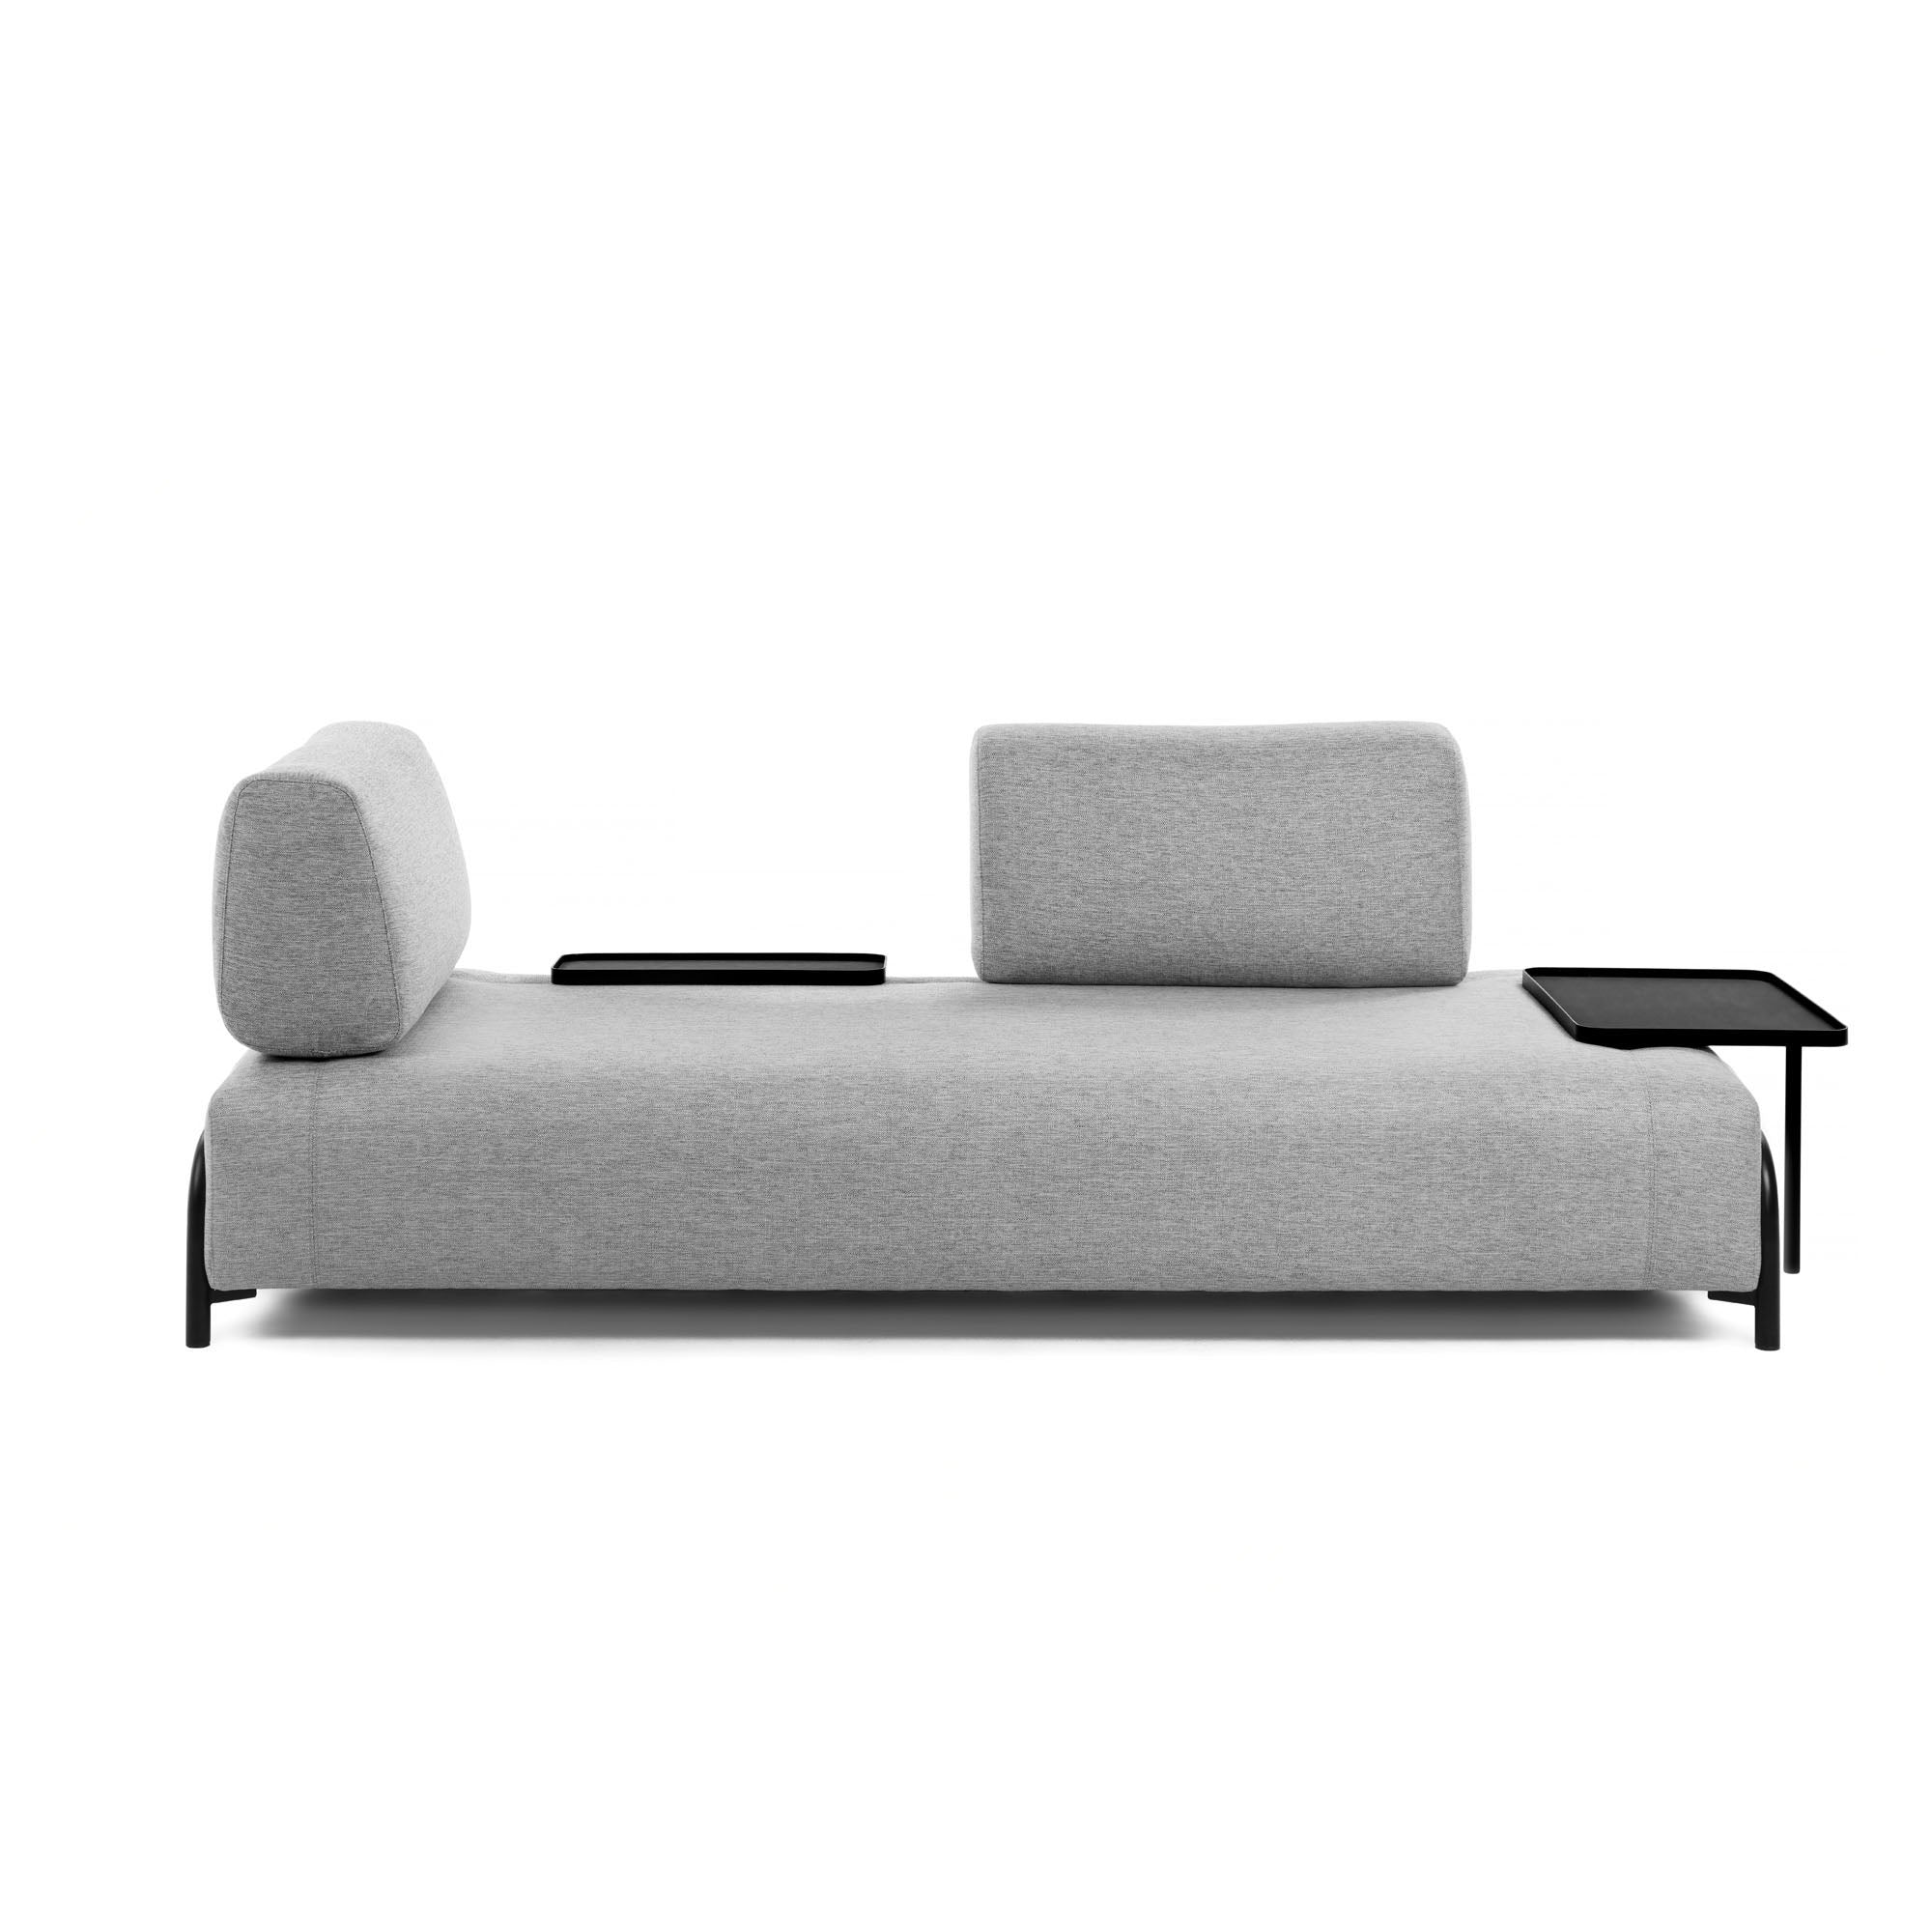 Compo 3 személyes kanapé nagy tálcával, világosszürke színben, 252 cm